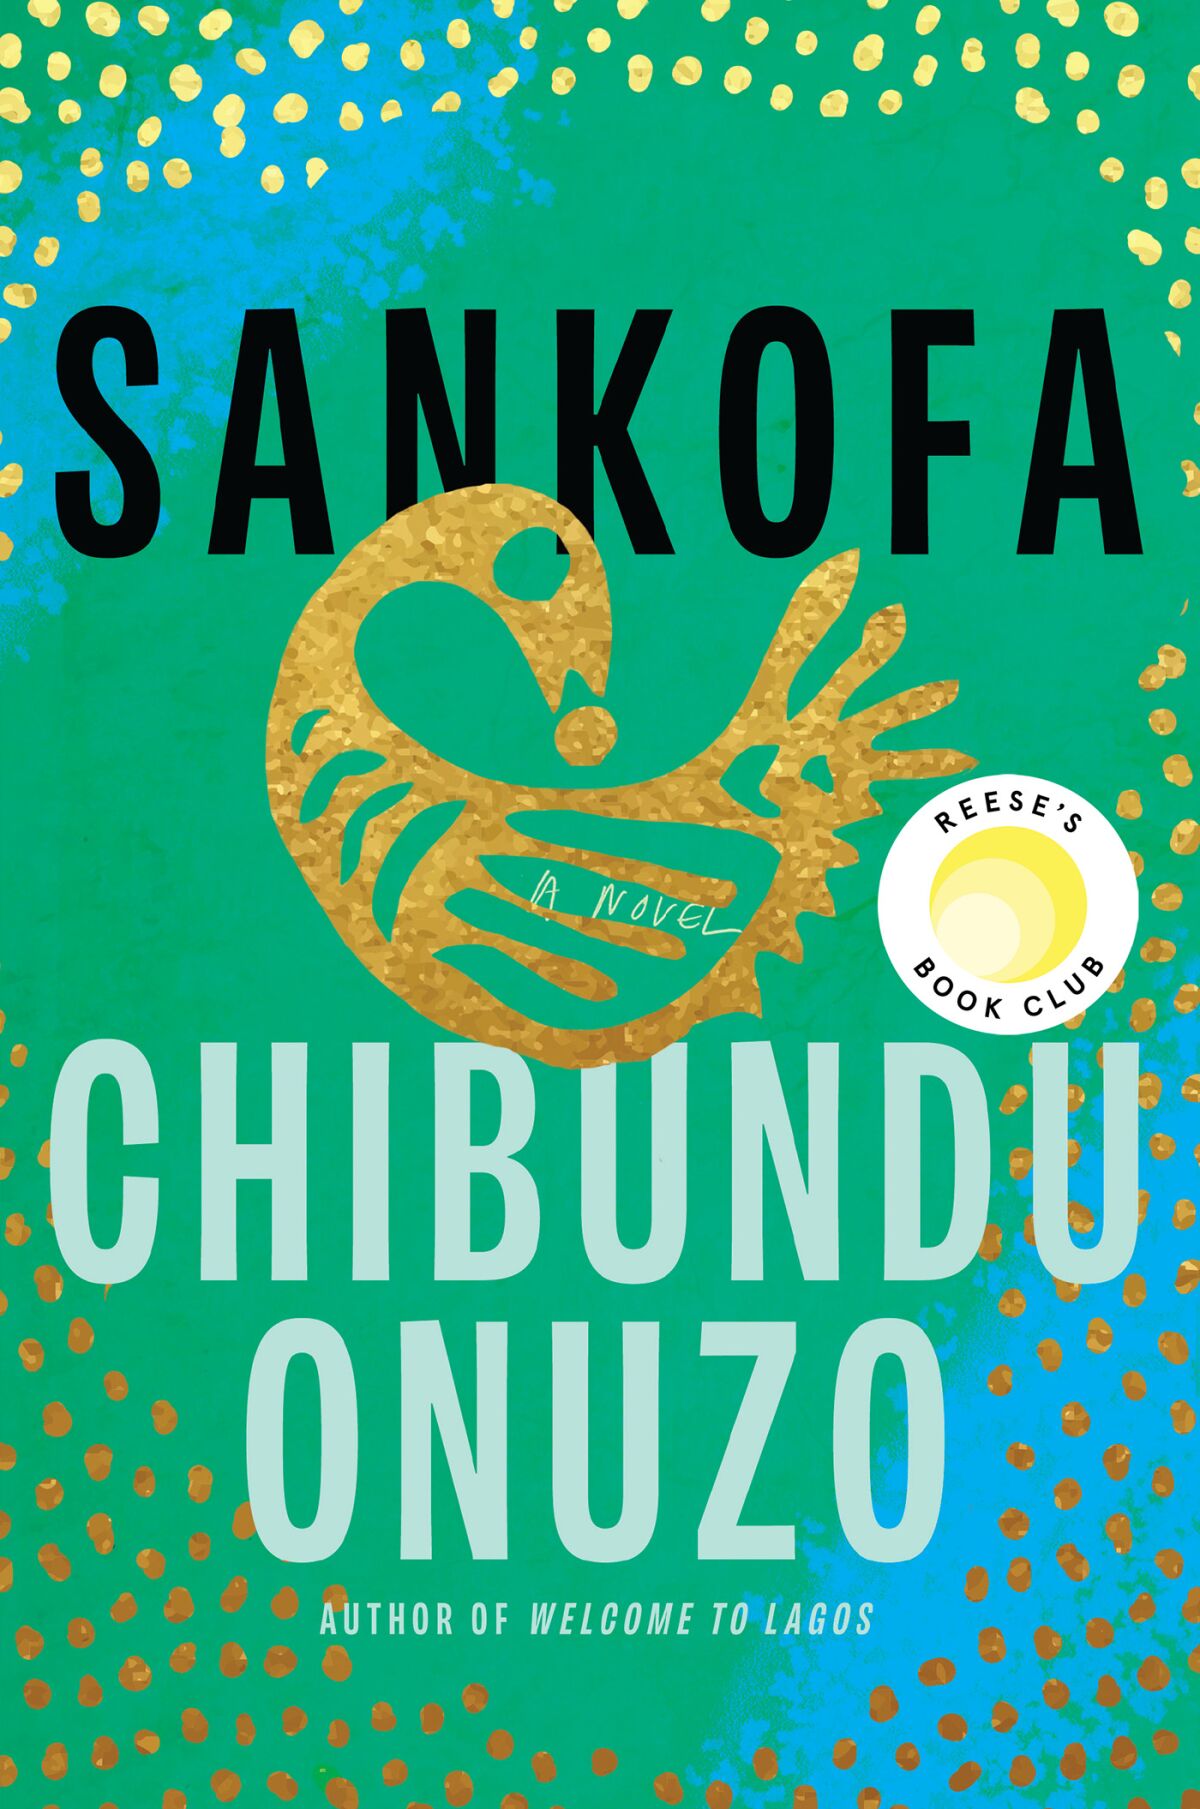 "Sankofa," by Chibundu Onuzo